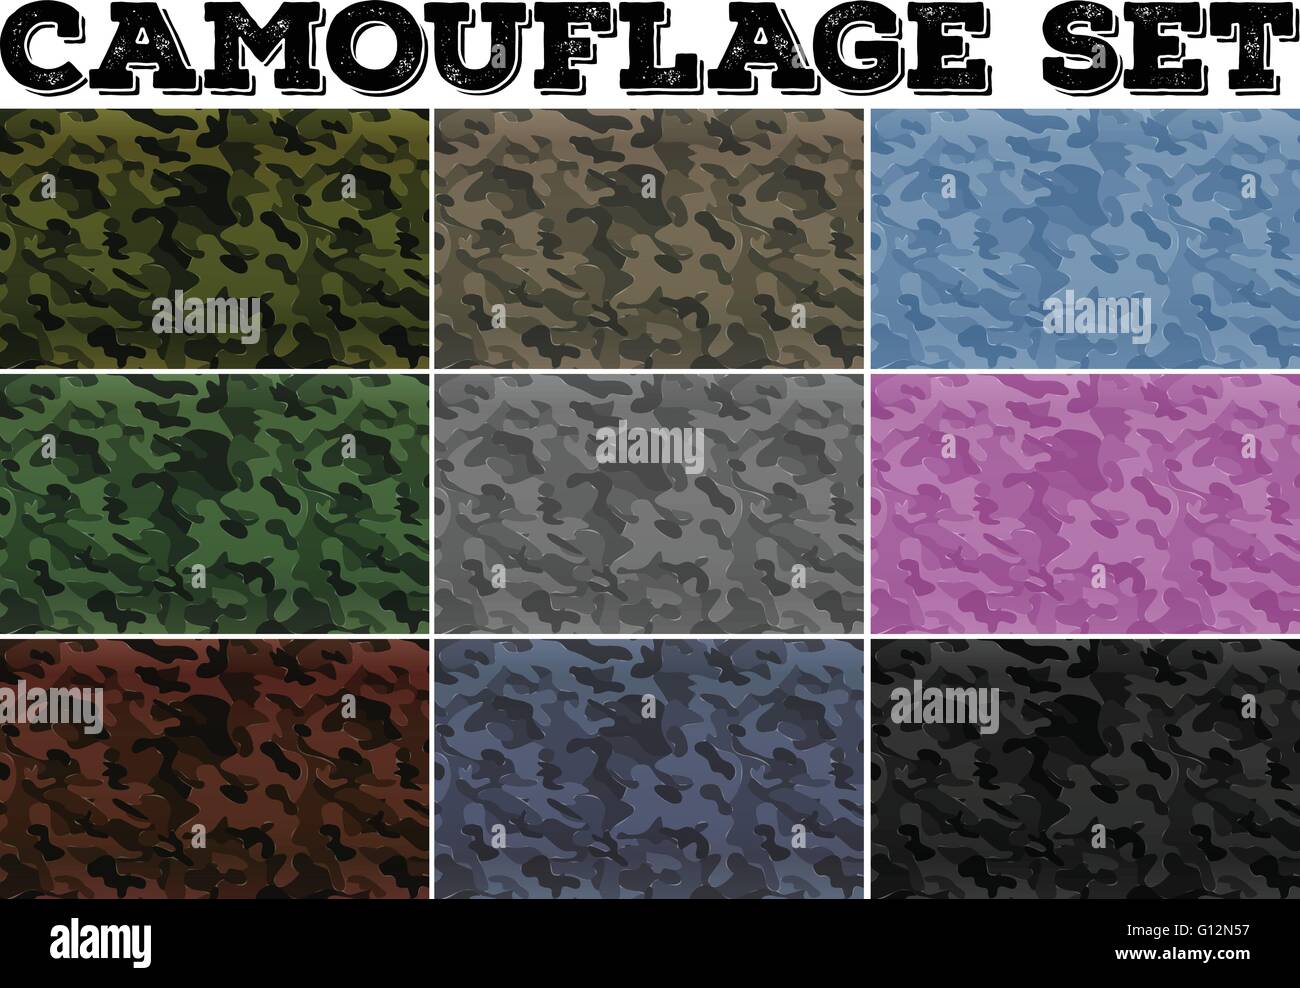 Camouflage-Set mit militärischen Thema illustration Stock Vektor